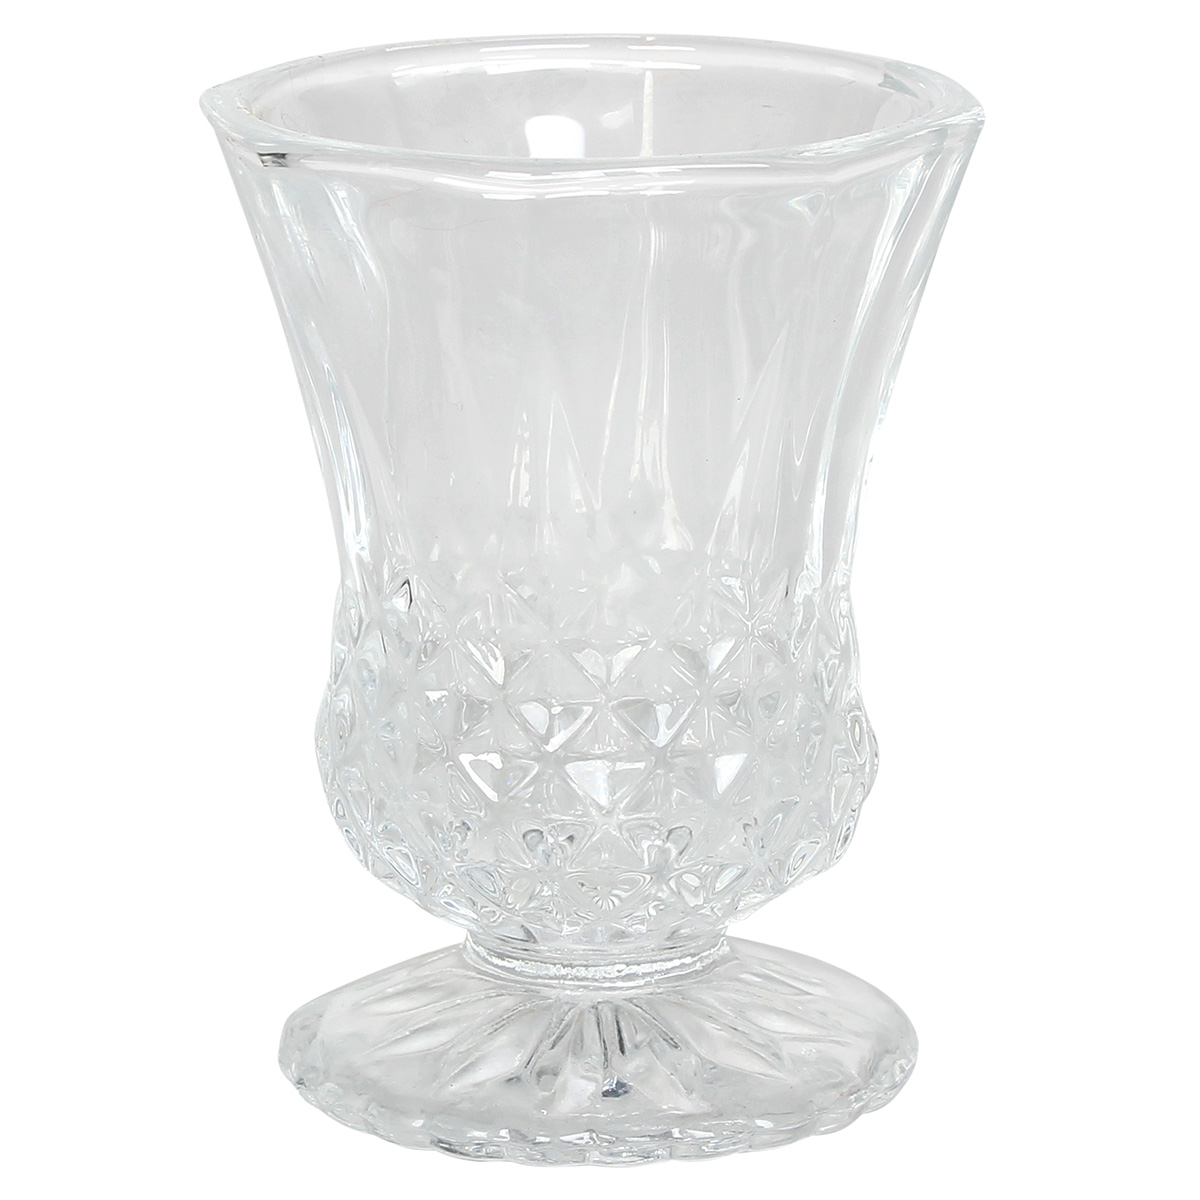 Ποτήρια σφηνάκι - λικέρ κολωνάτα γυάλινα τεμ. 6 60 ml Φ5,8Χ7,5 εκ. - KESKOR 61341